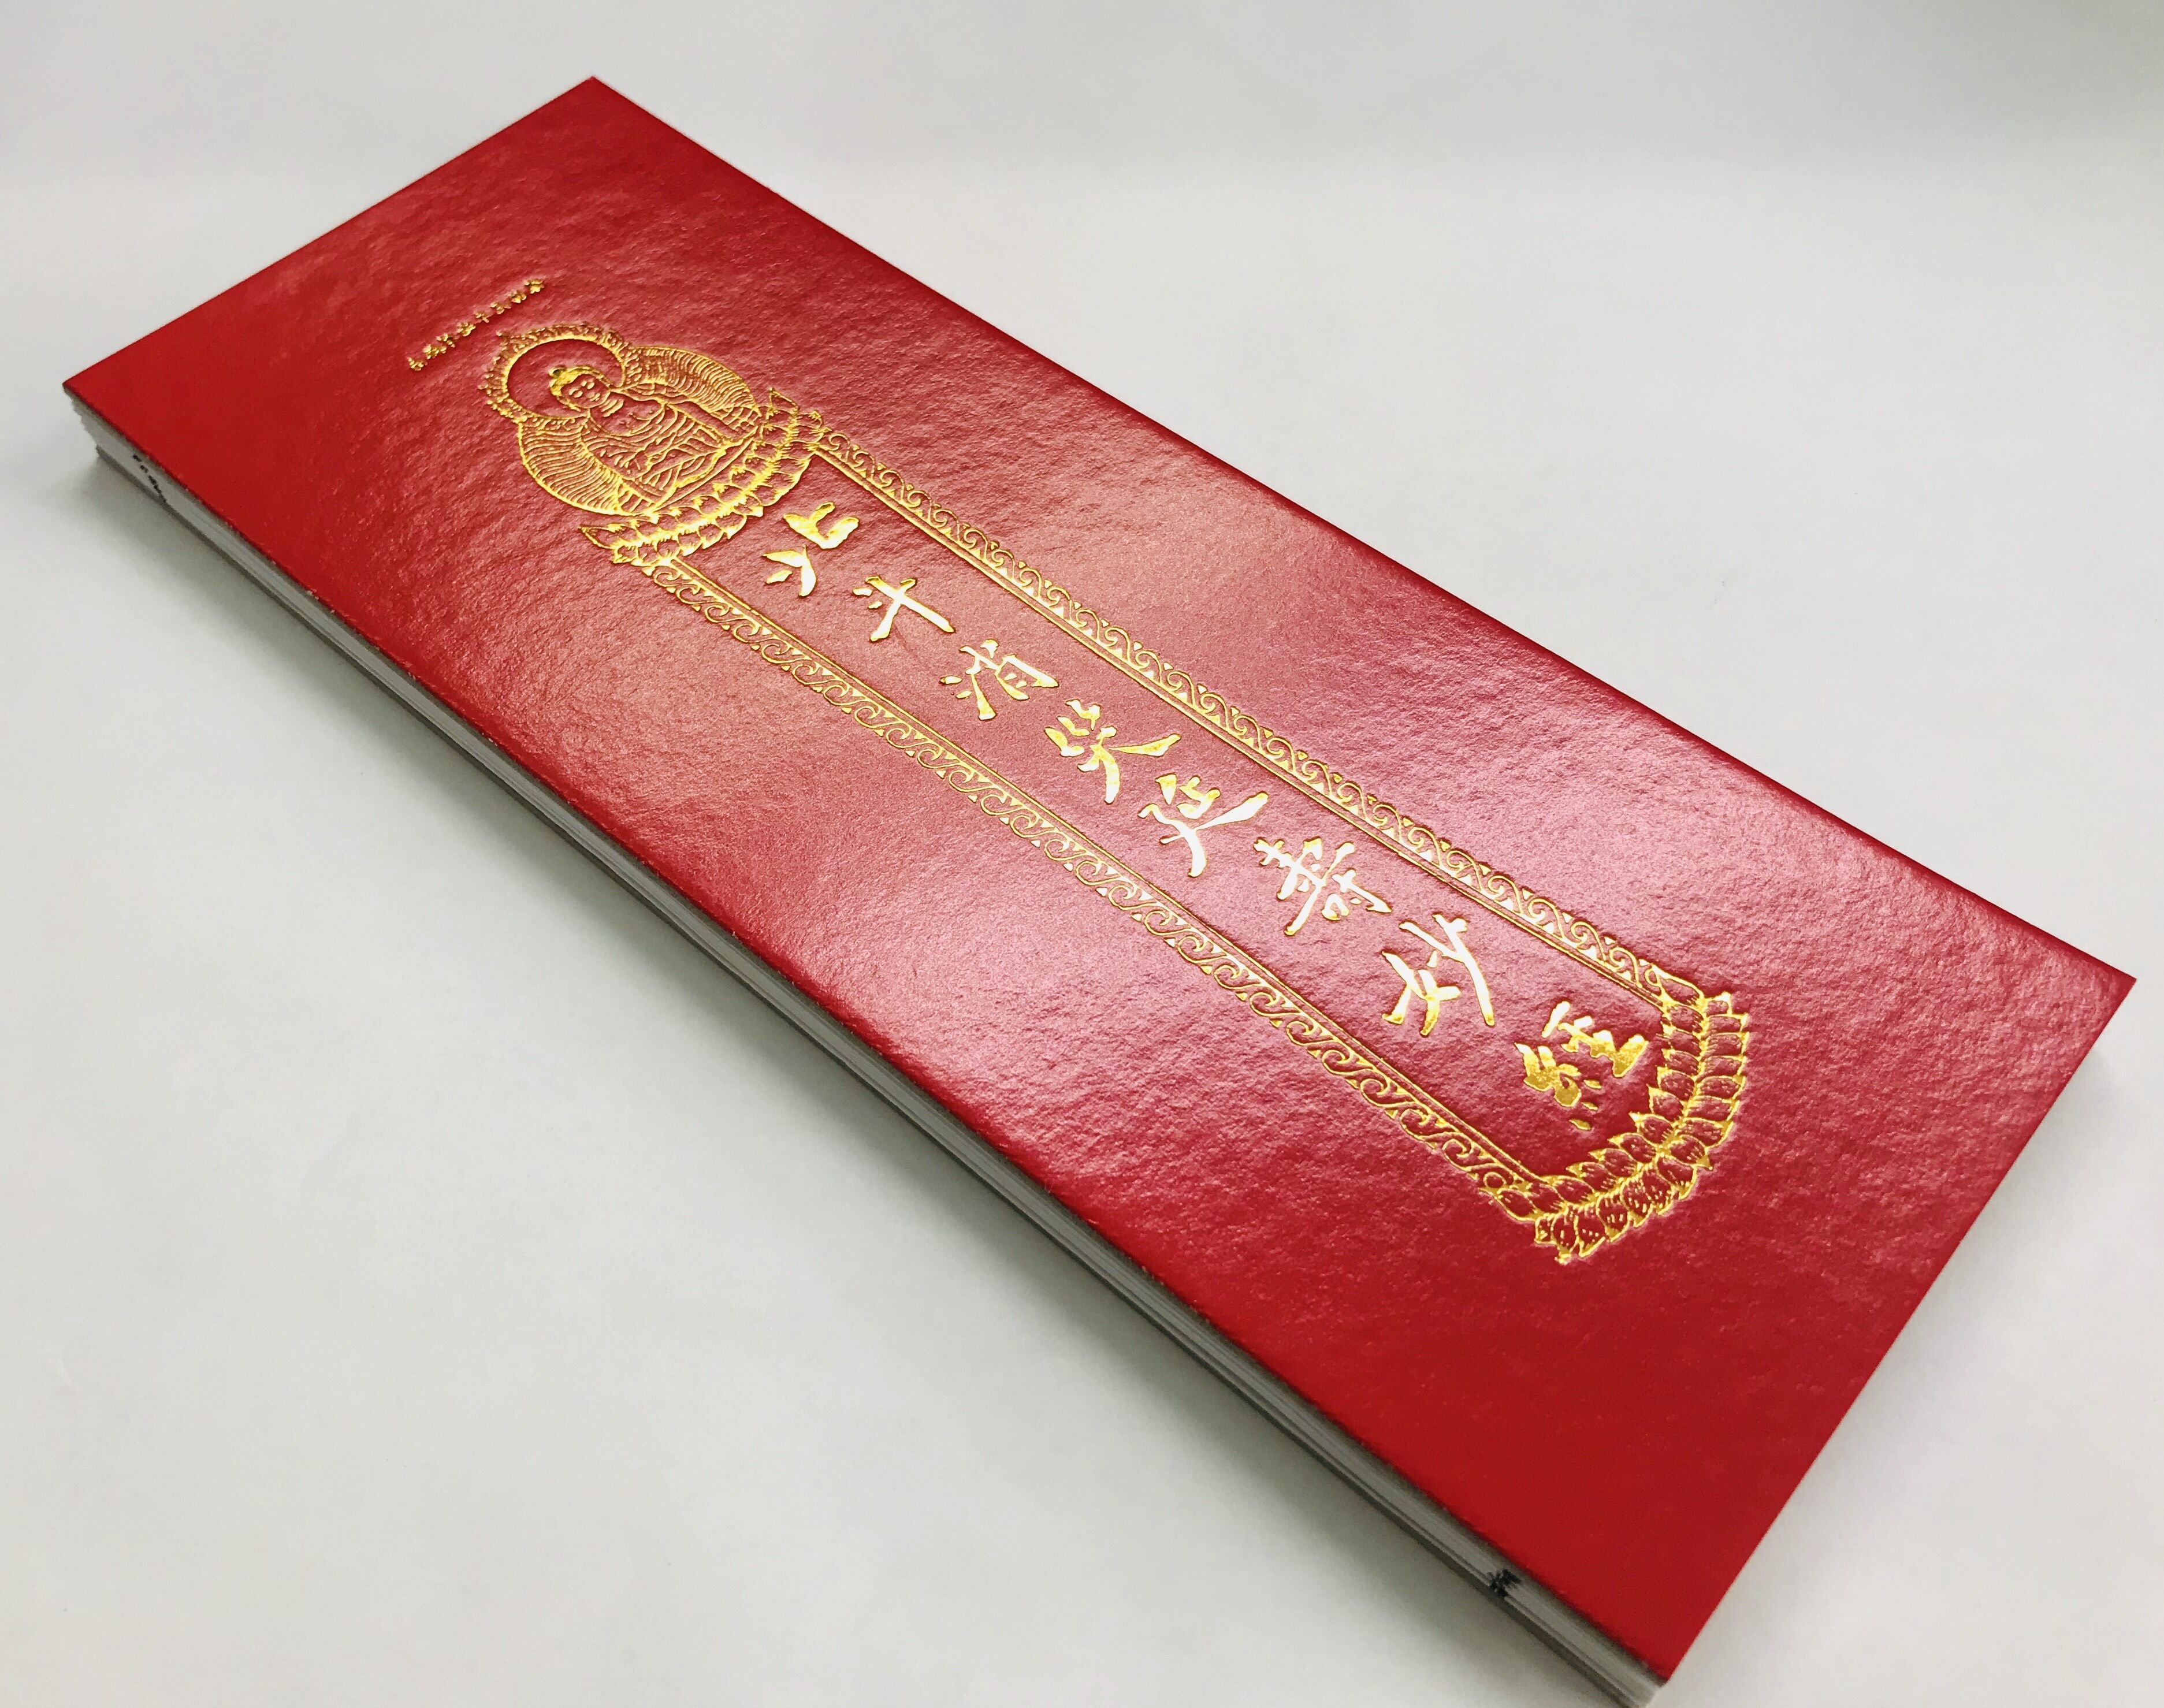 สมุดสวด ปักเต้าเก็ง ภาษาจีนโหวงอิม ปกแข็งสีแดง ปั้มทอง